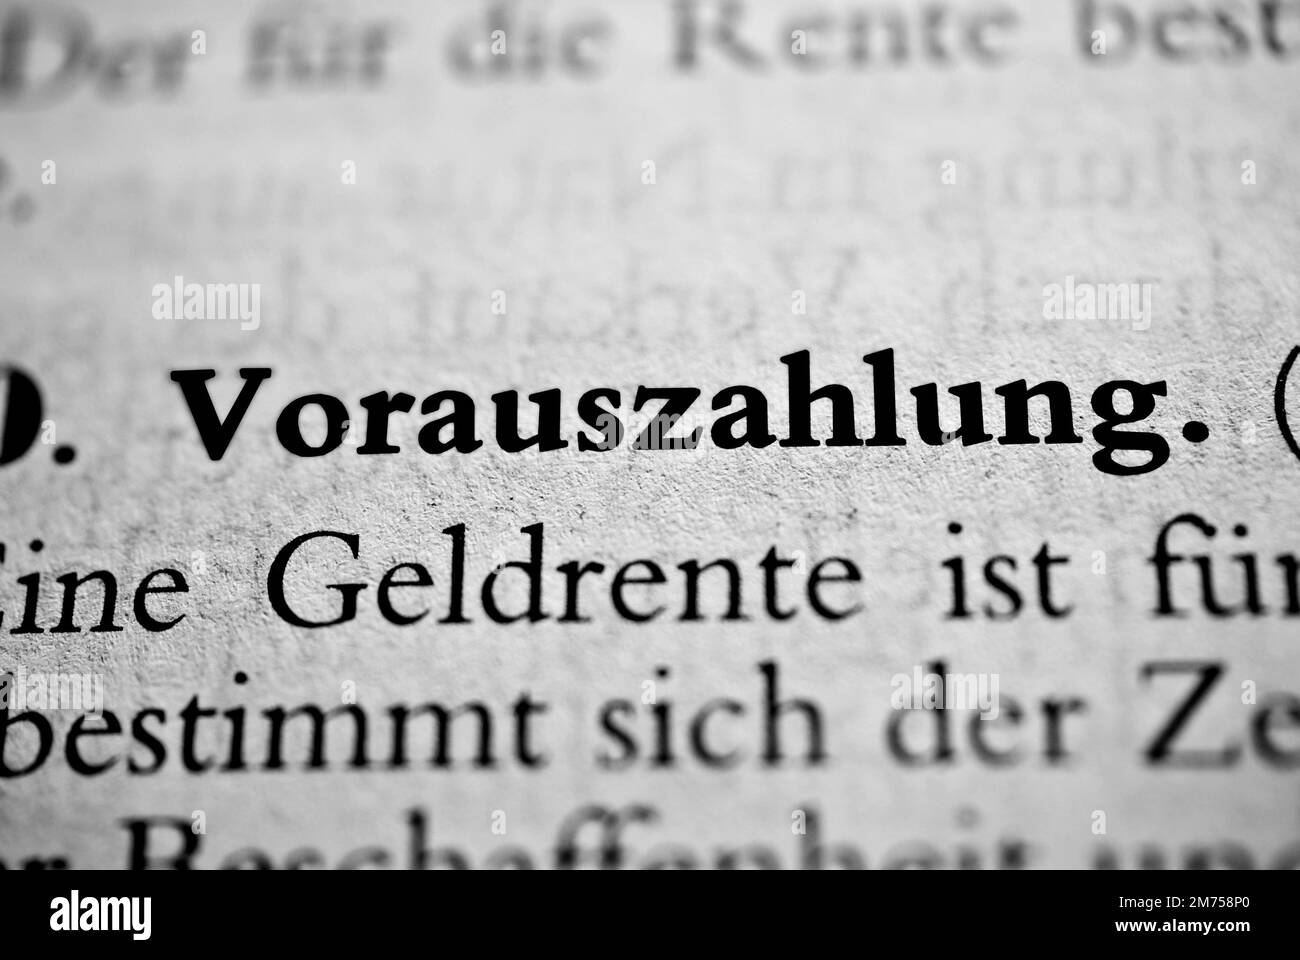 Eine Nahaufnahme des deutschen Wortes Vorauszahlung in Fettschrift, umgeben von verschwommenen Wörtern Übersetzung - Vorauszahlung Stockfoto